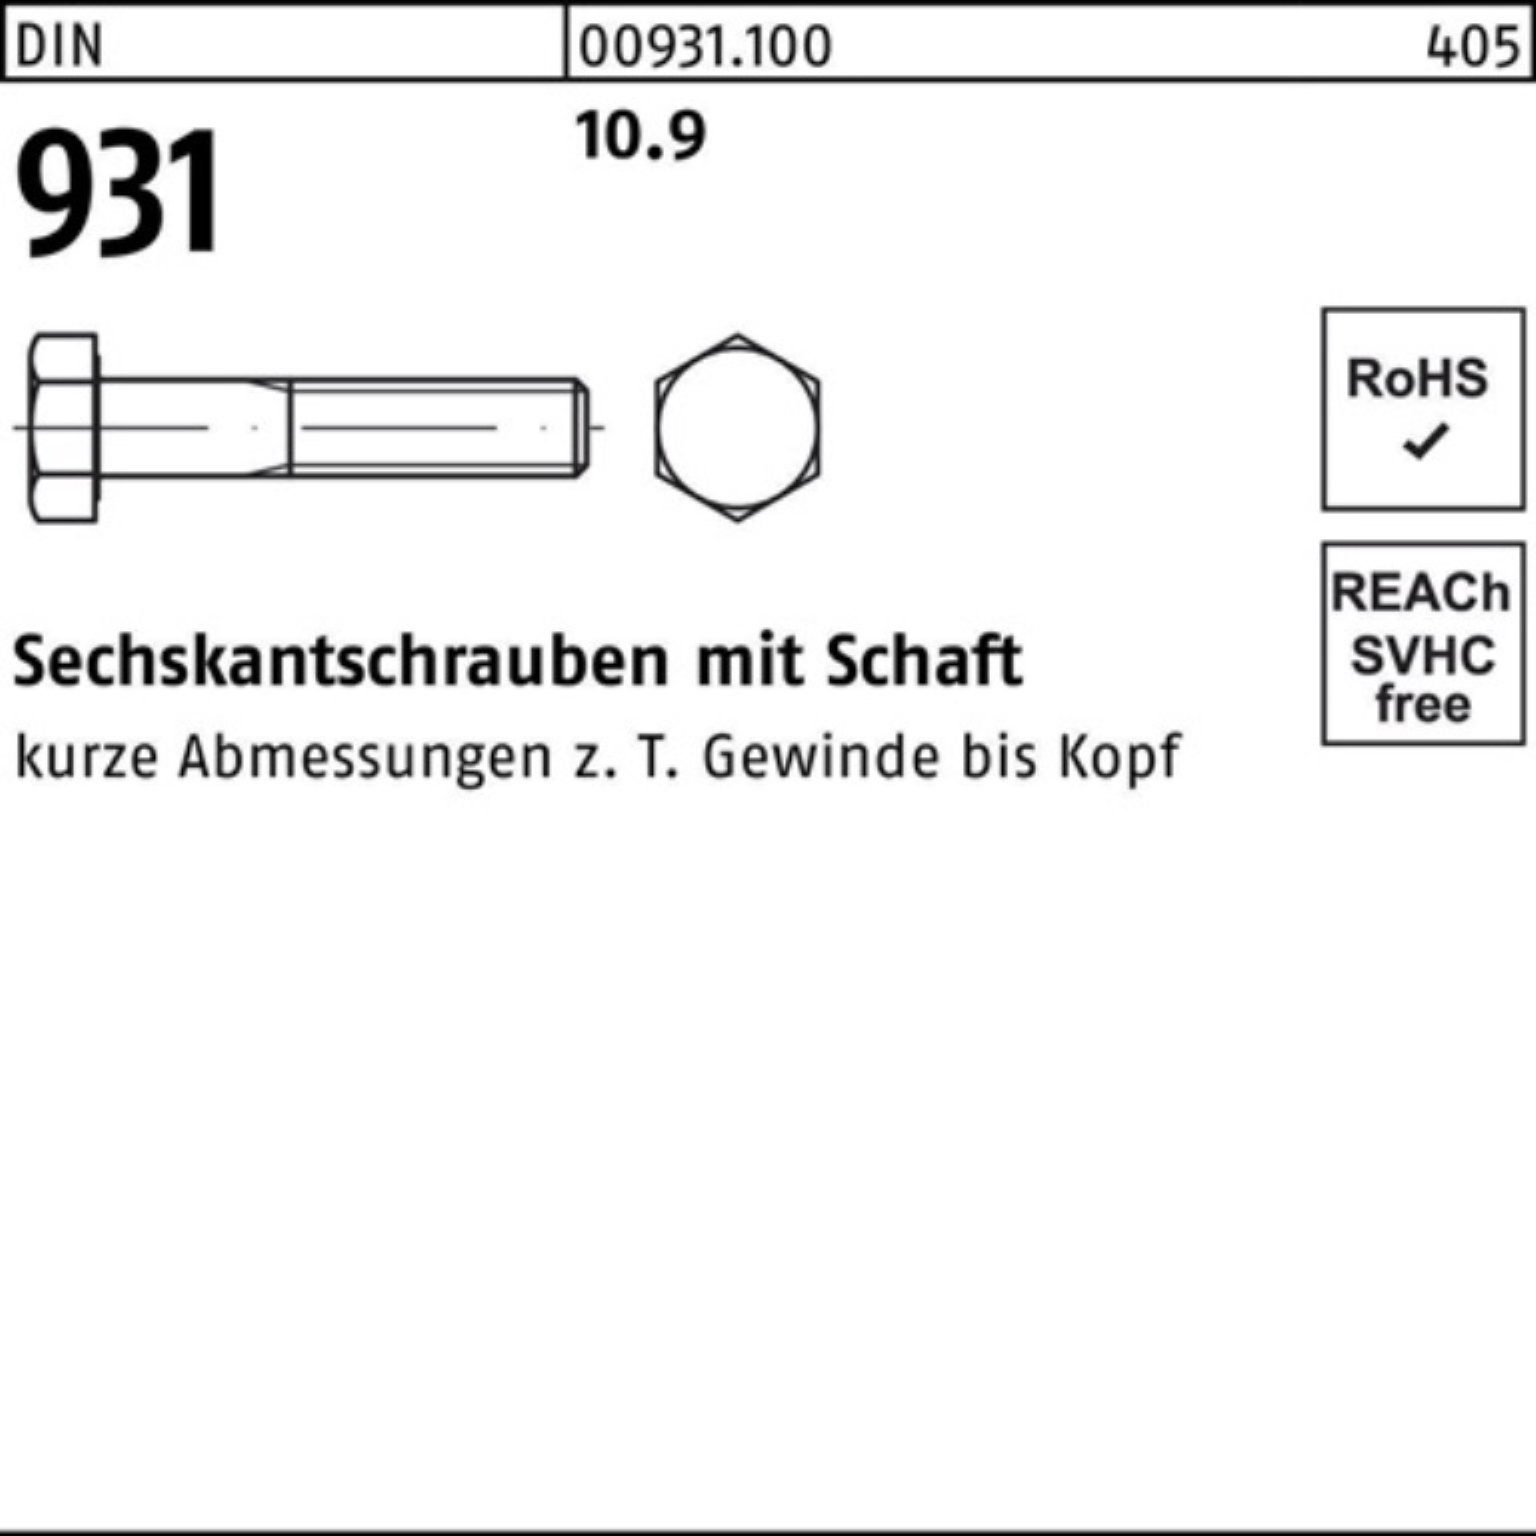 M39x 100er Schaft 1 Pack Reyher Stück DIN Sechskantschraube 240 Sechskantschraube DIN 10.9 931